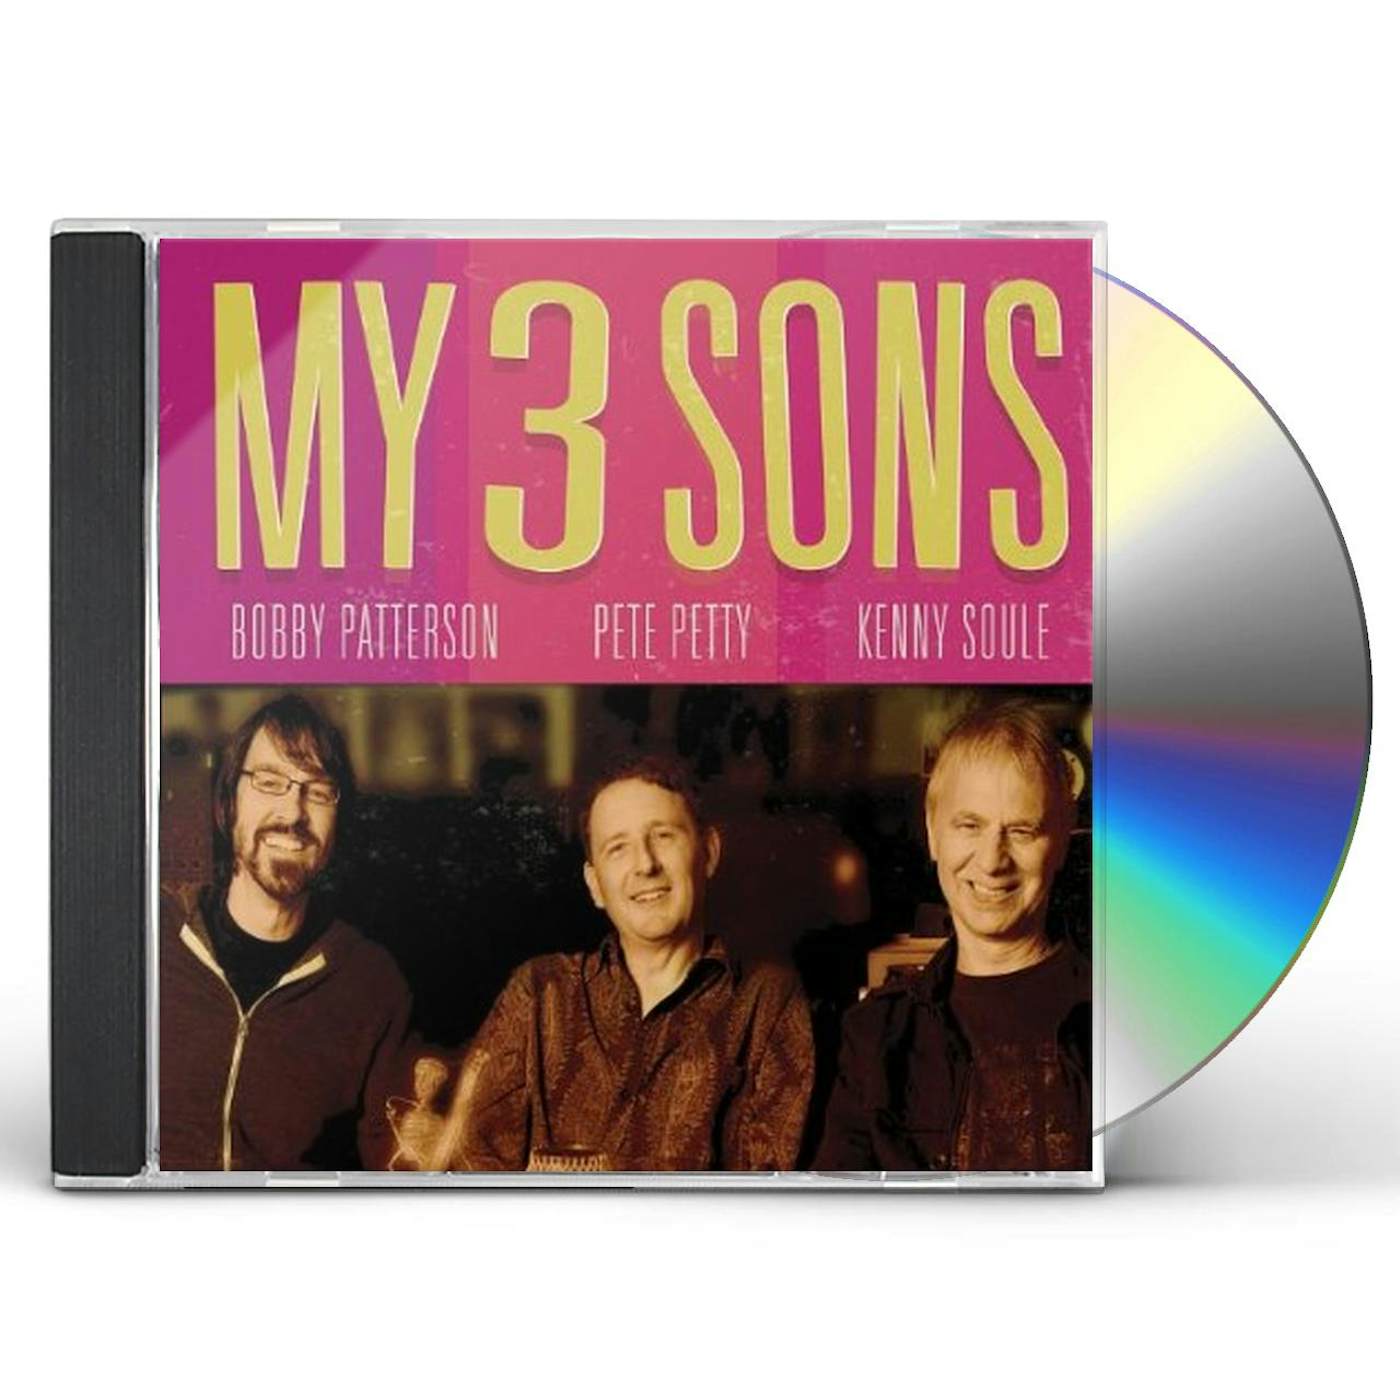 MY 3 SONS CD